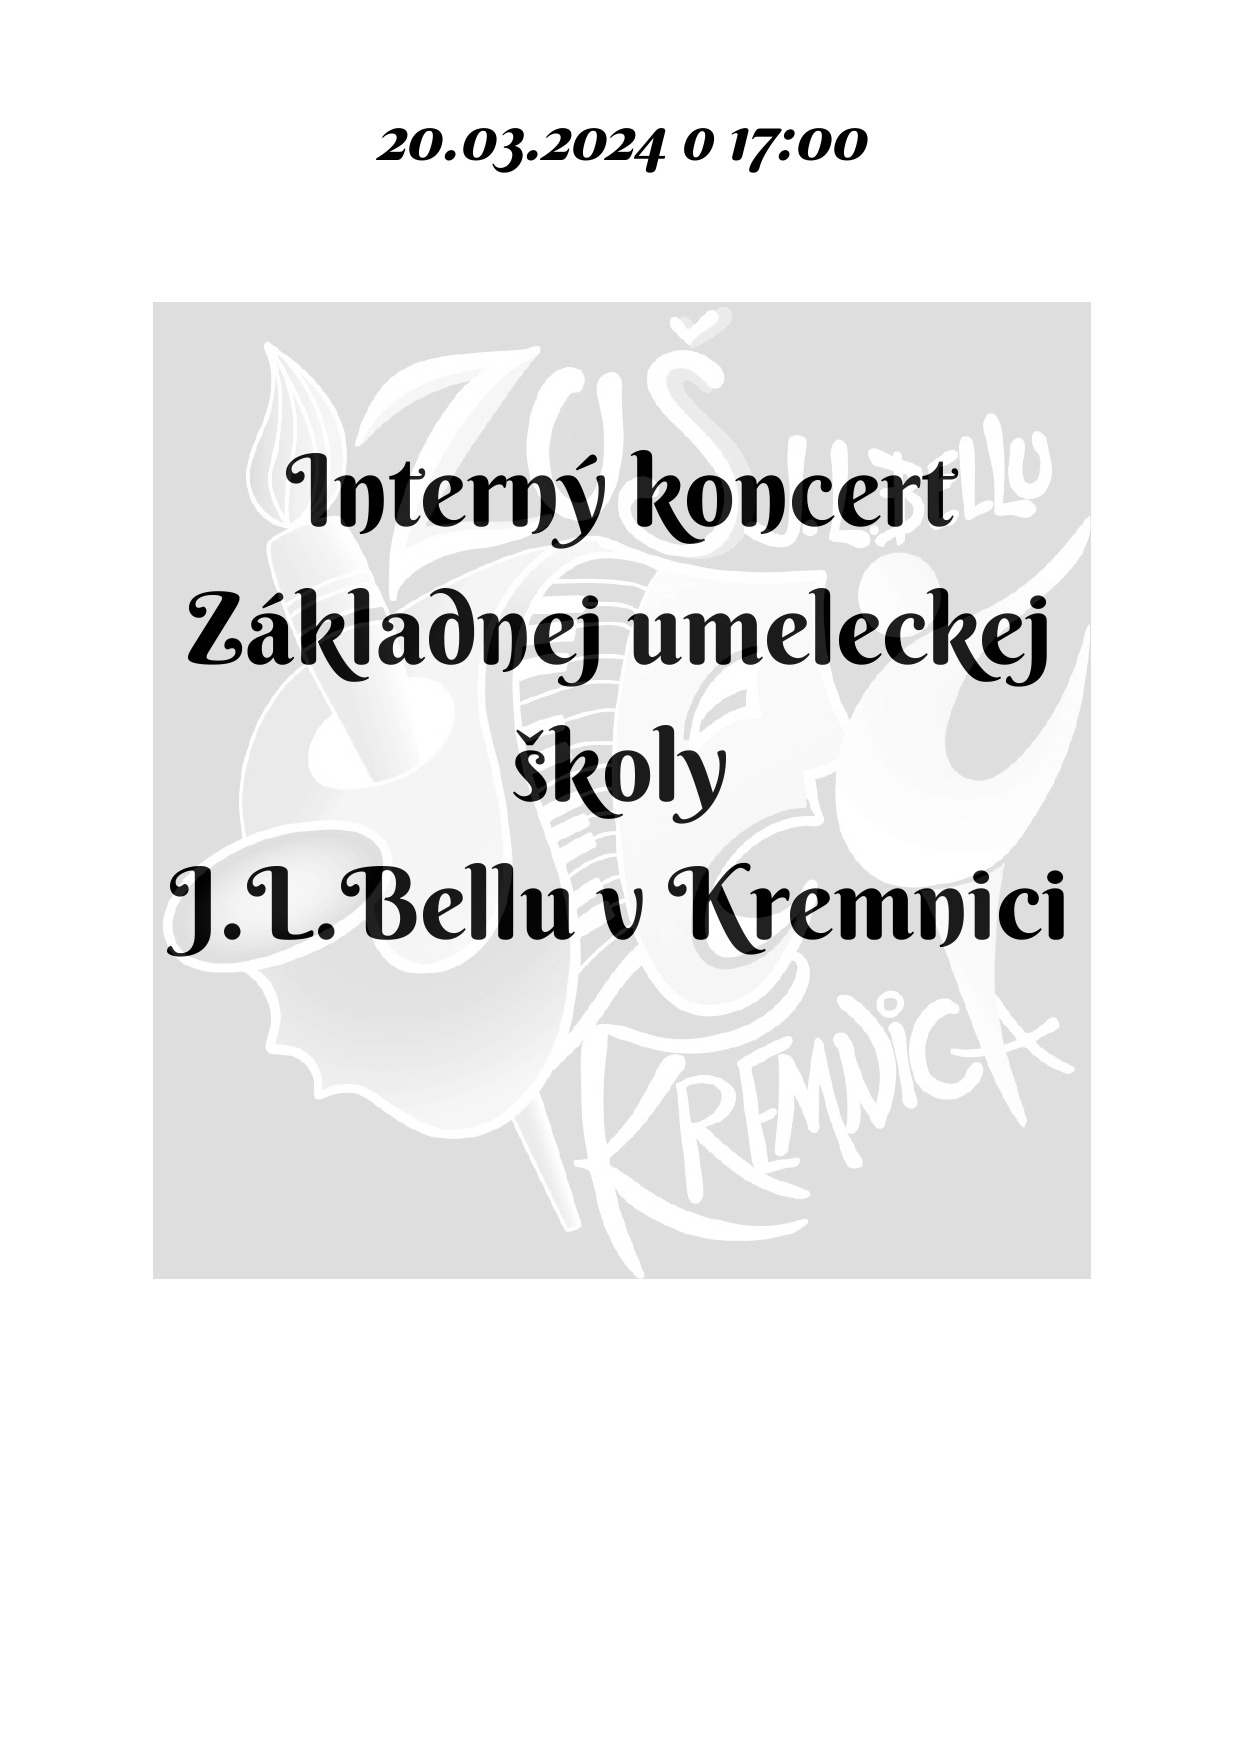 Pozvánka na interný koncert dnes 20.03. o 17:00 v sále ZUŠ, alebo online - Obrázok 1